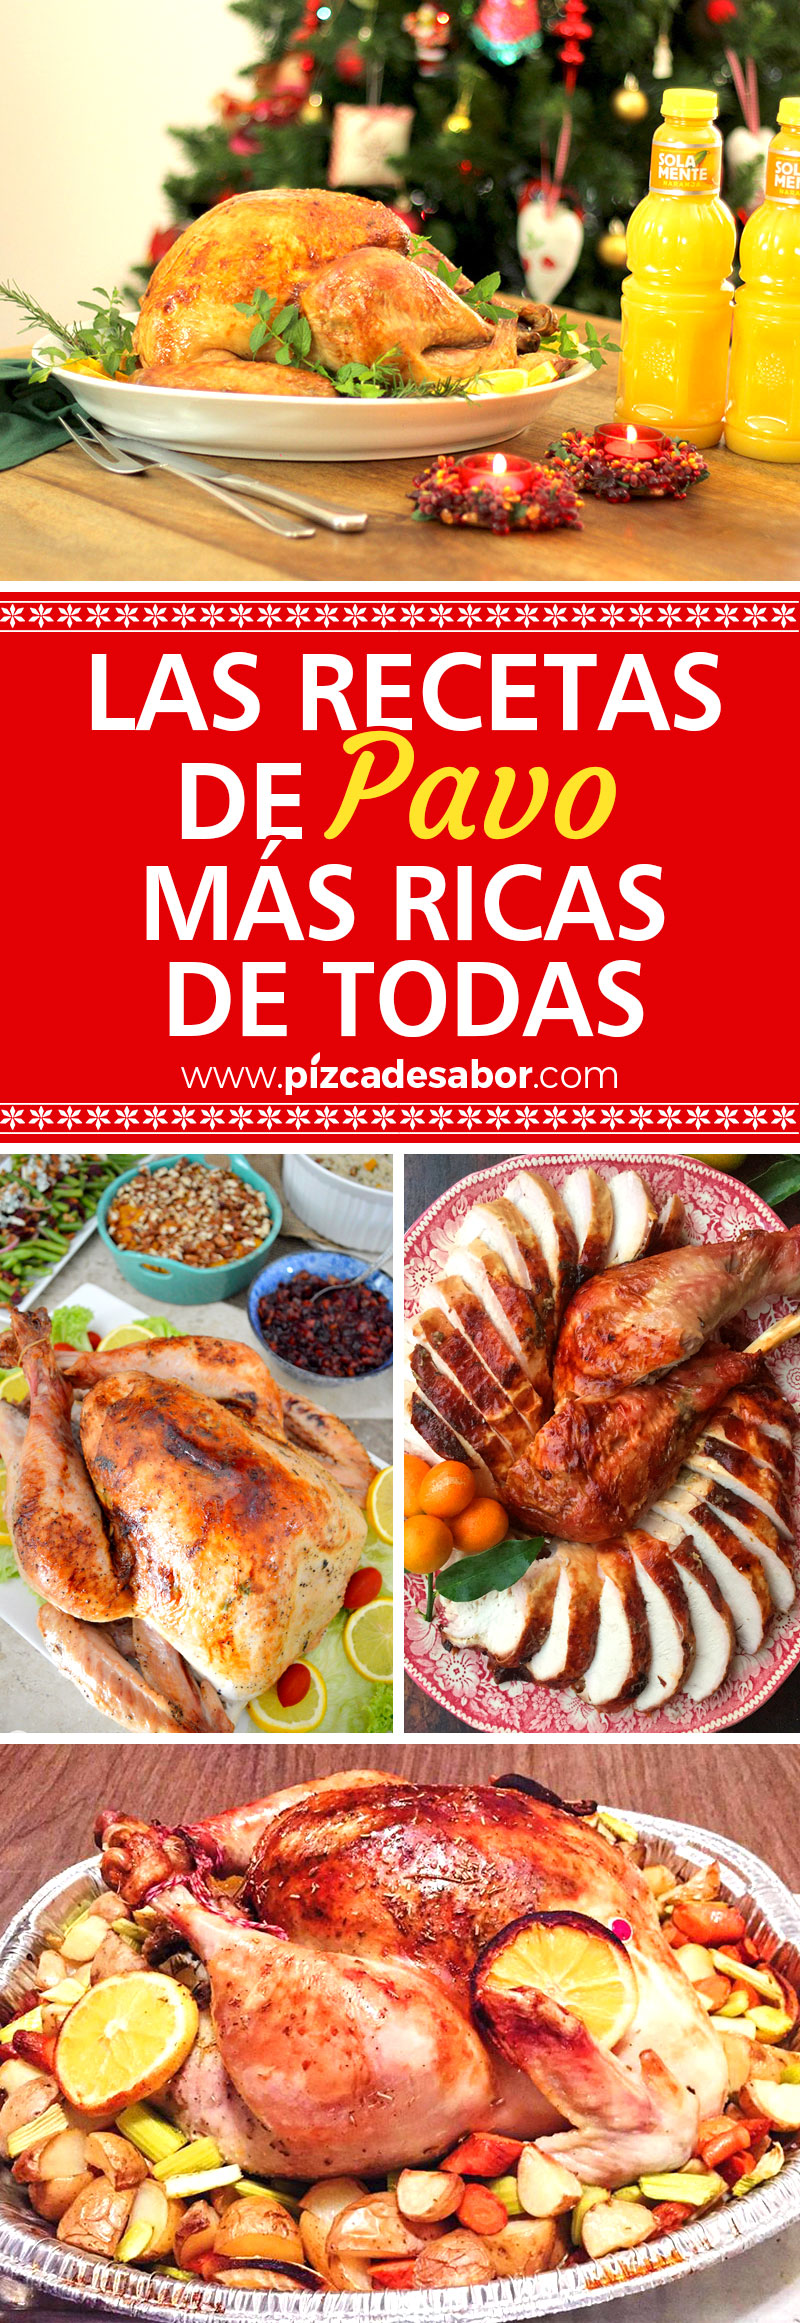 Las mejores recetas de pavo www.pizcadesabor.com